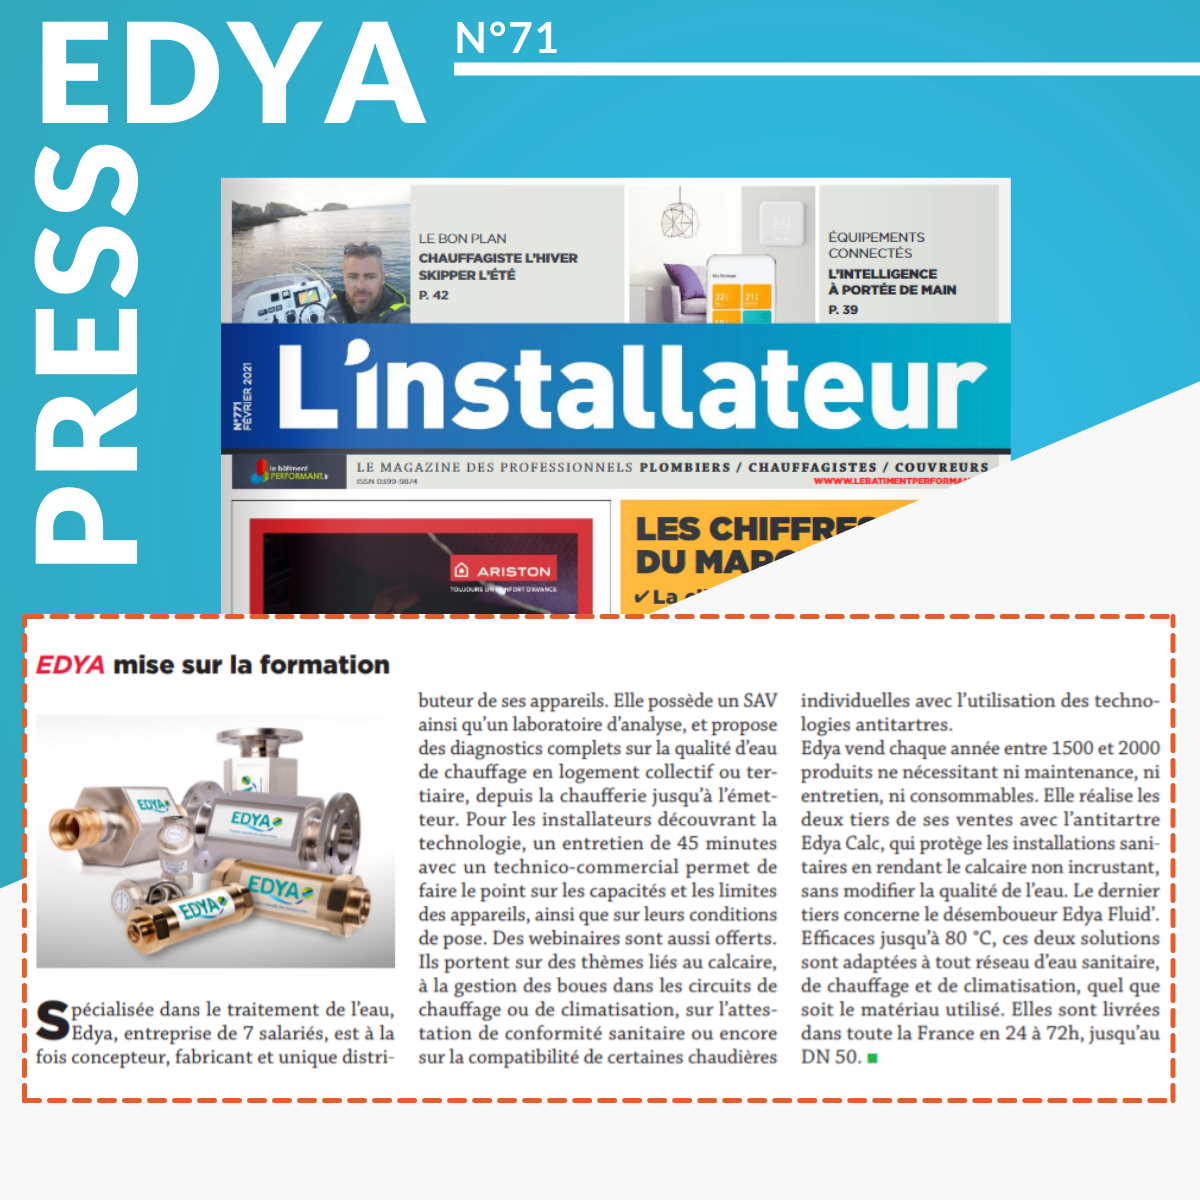 Article L'installateur : présentation d'EDYA